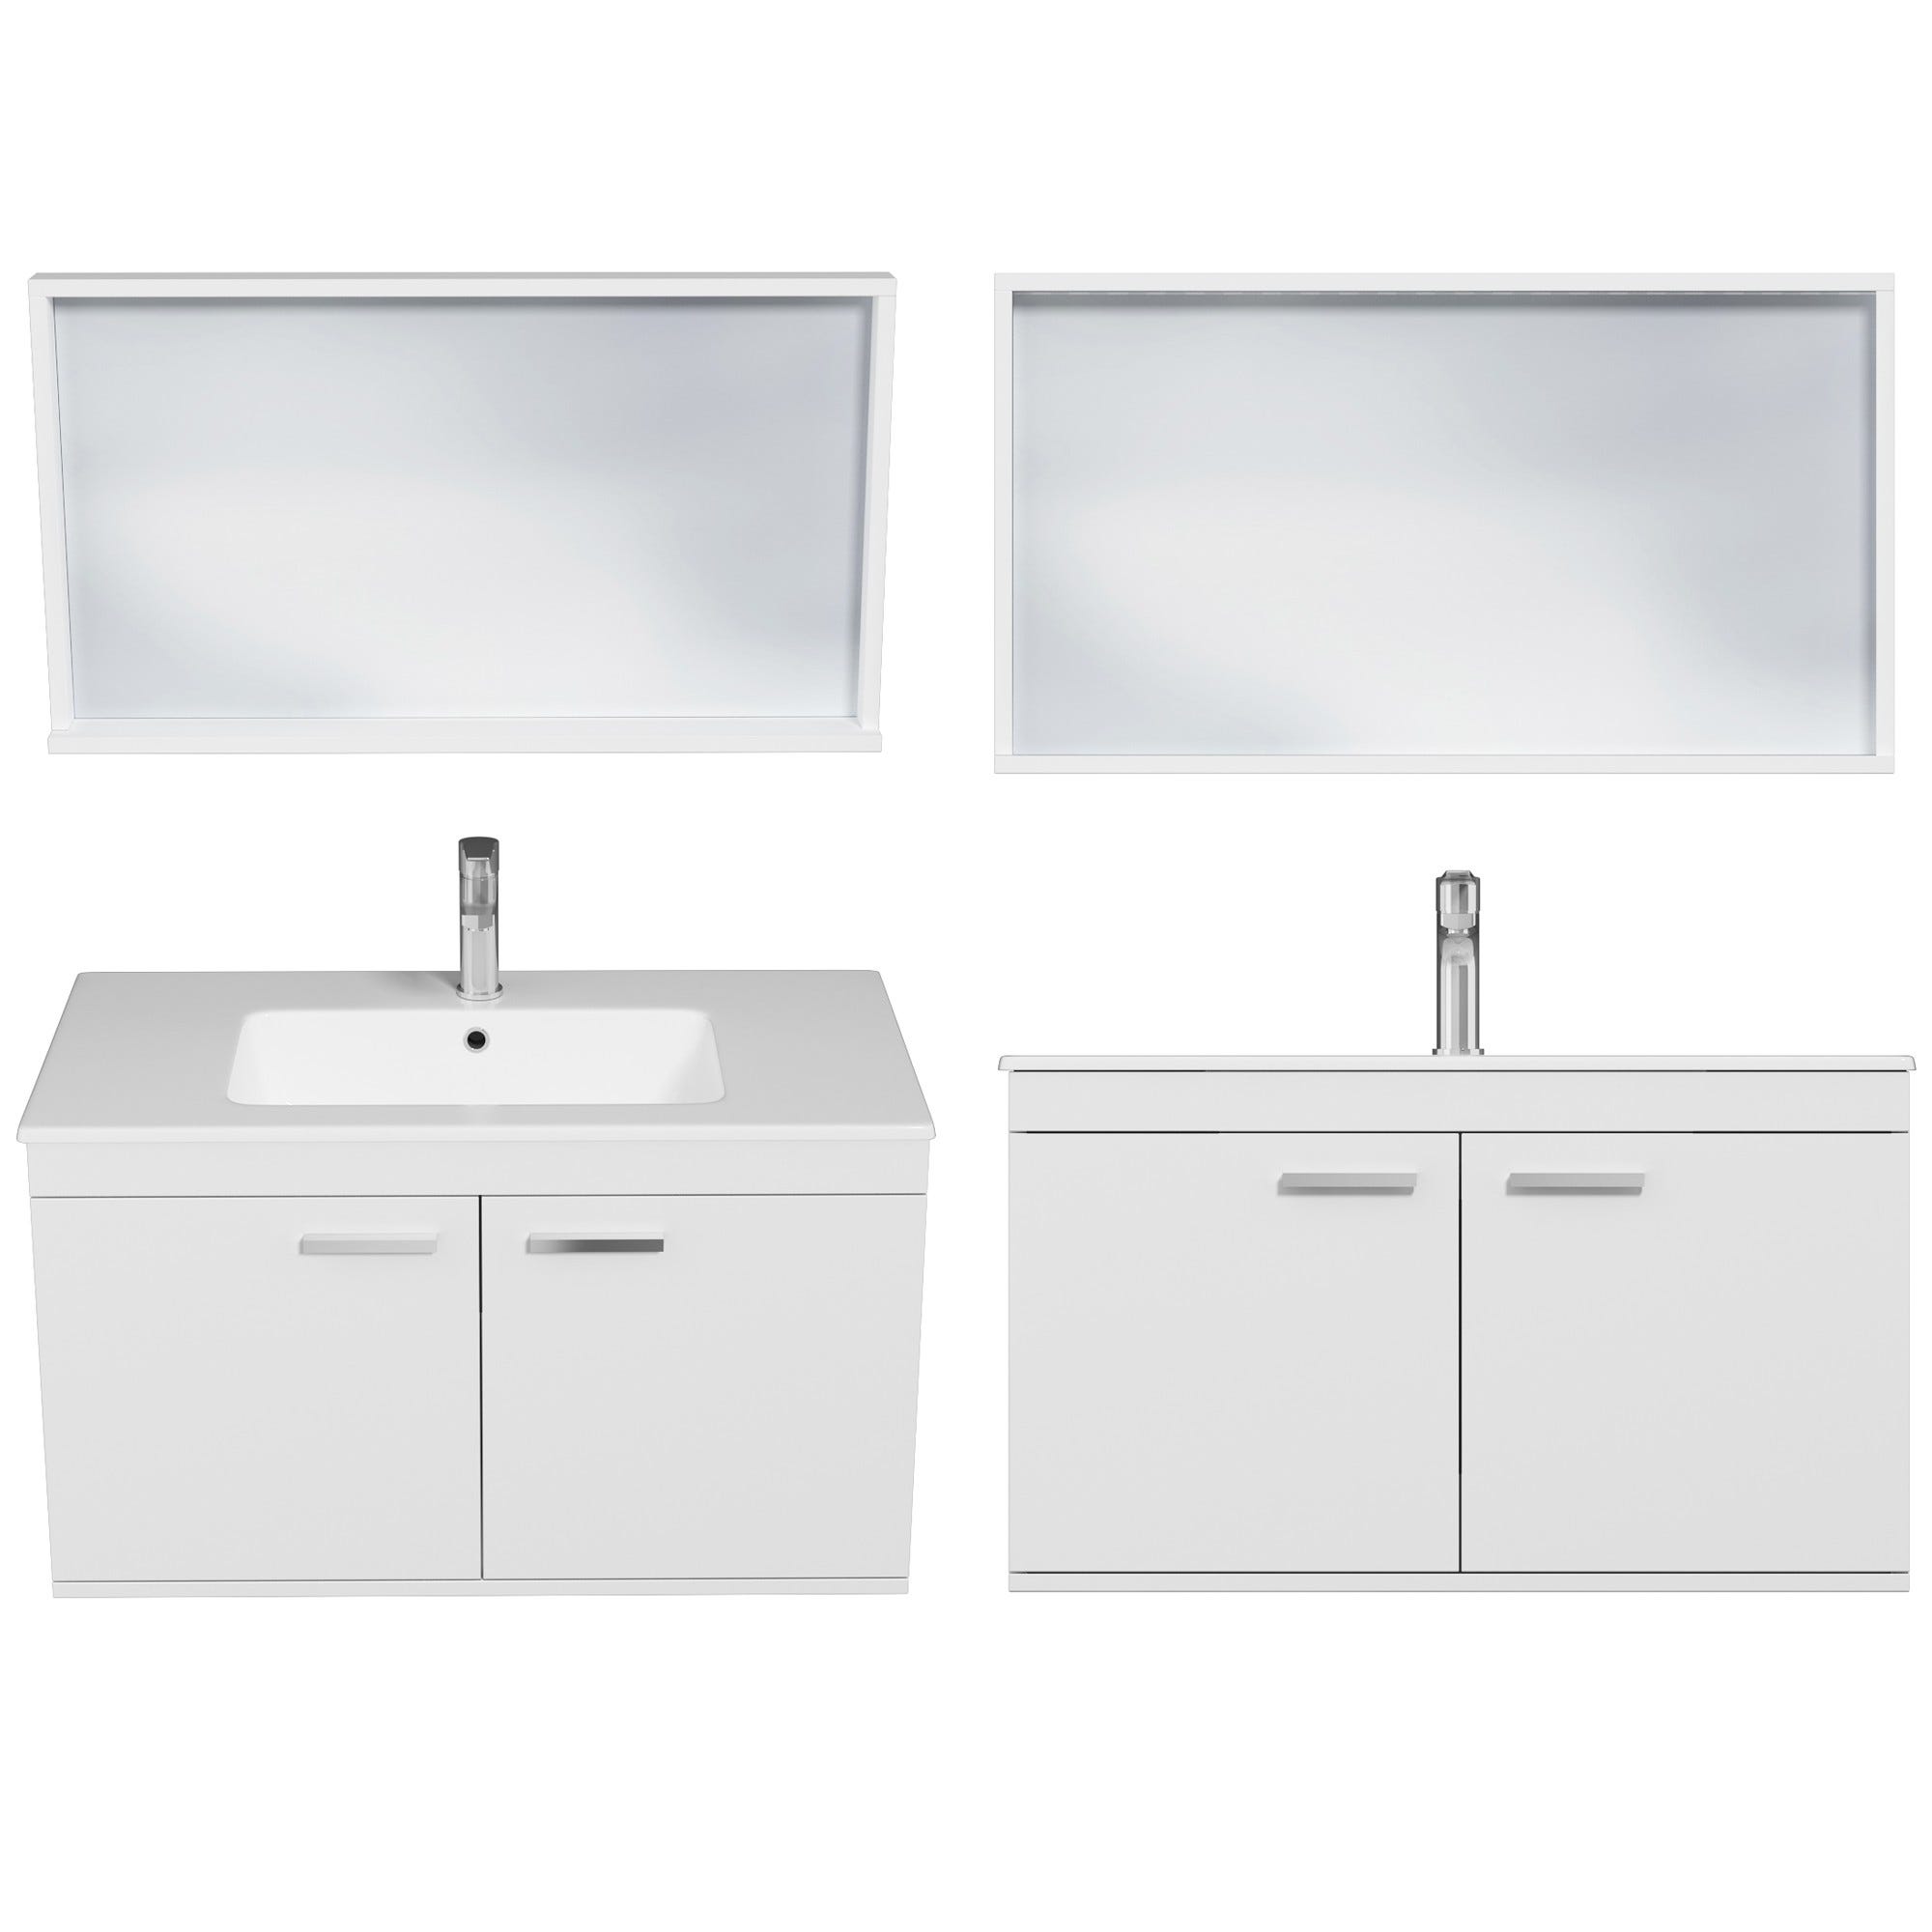 RUBITE Meuble salle de bain simple vasque 2 portes blanc largeur 90 cm + miroir cadre 3